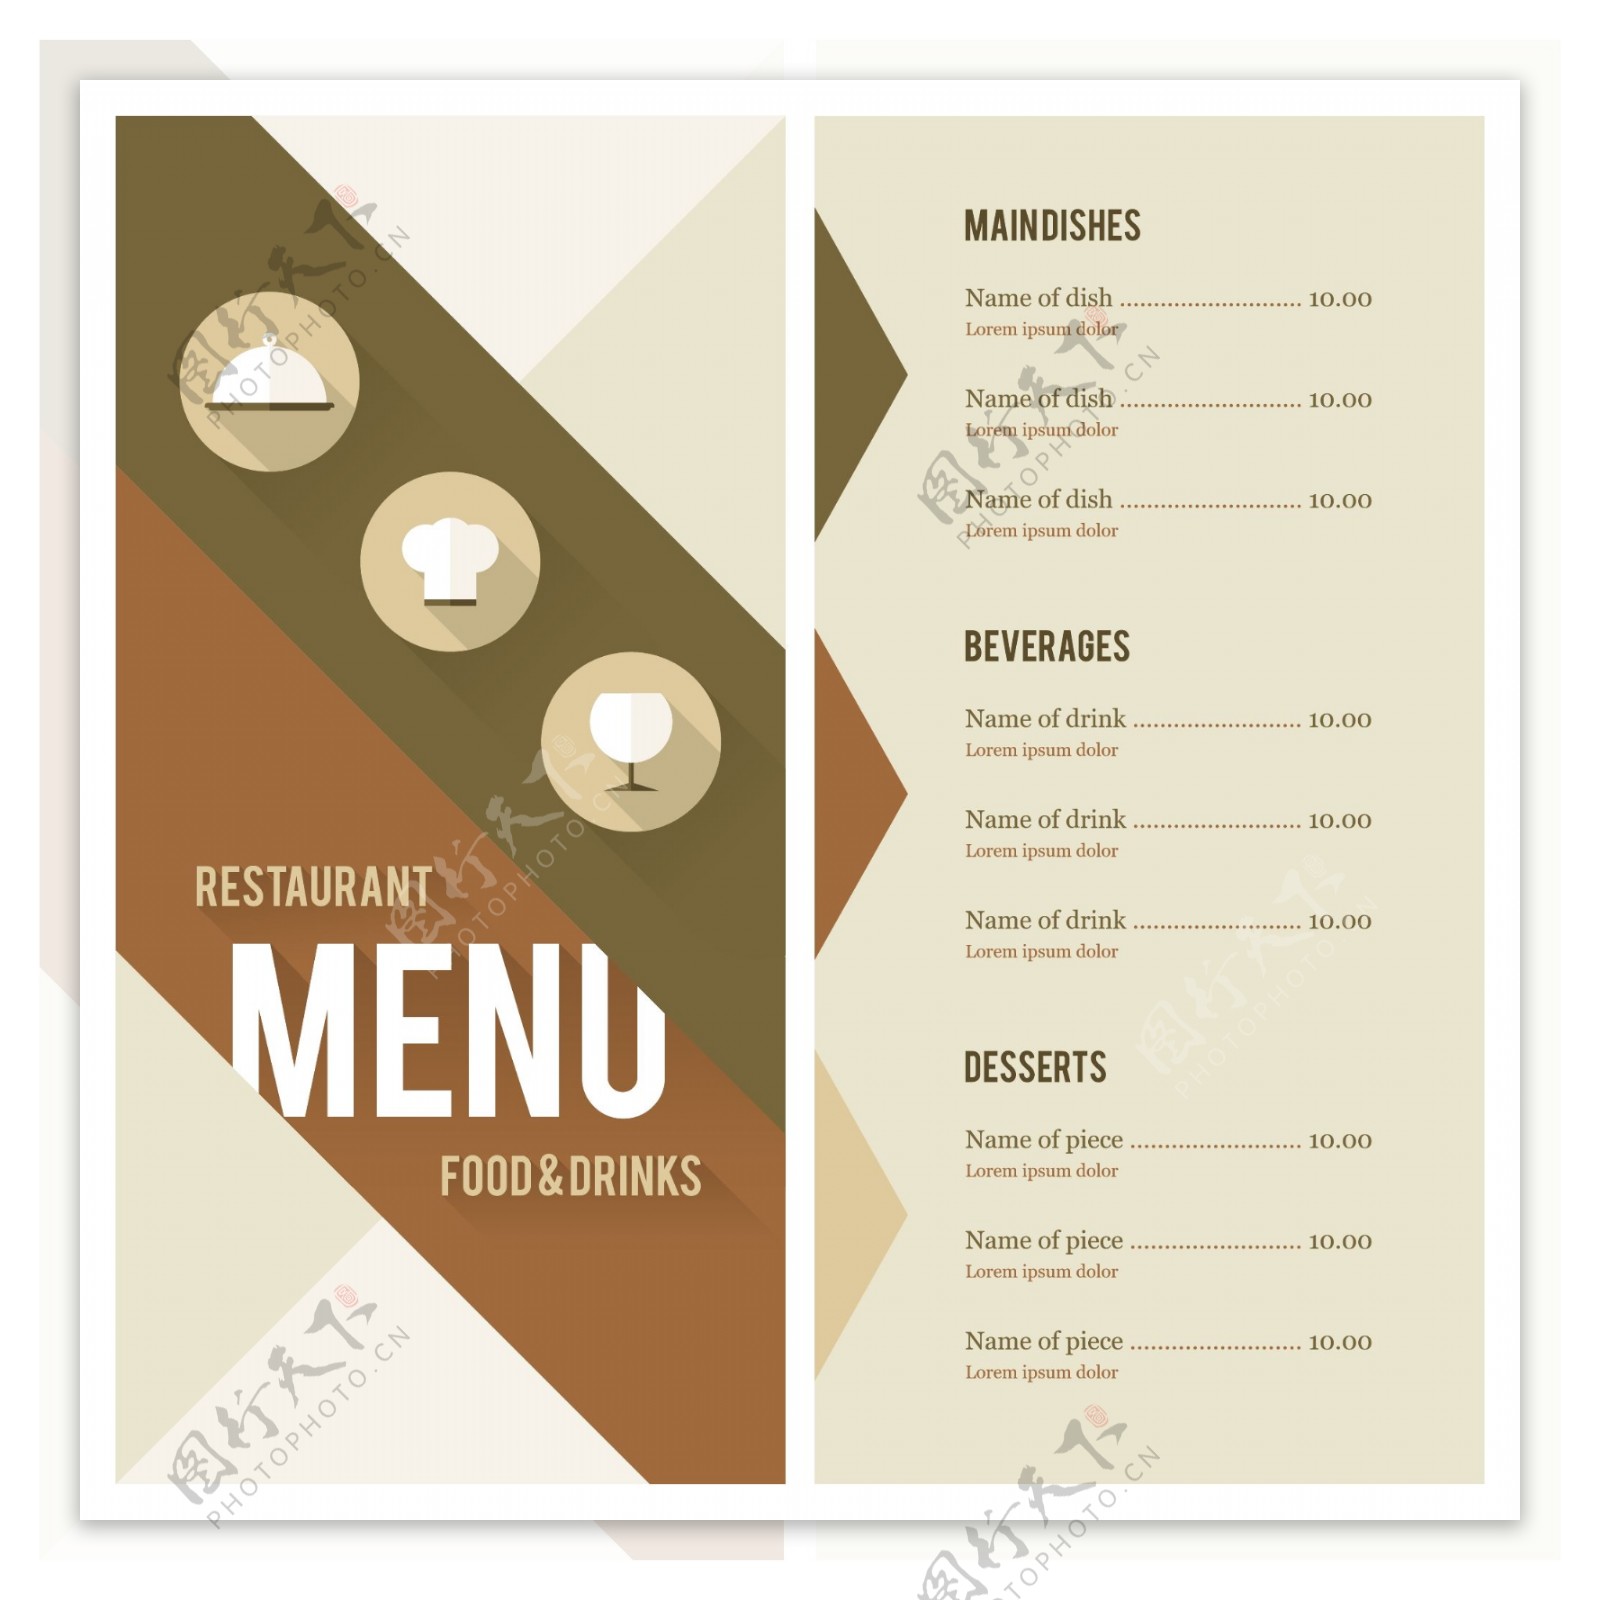 菜单设计饭店菜单图片